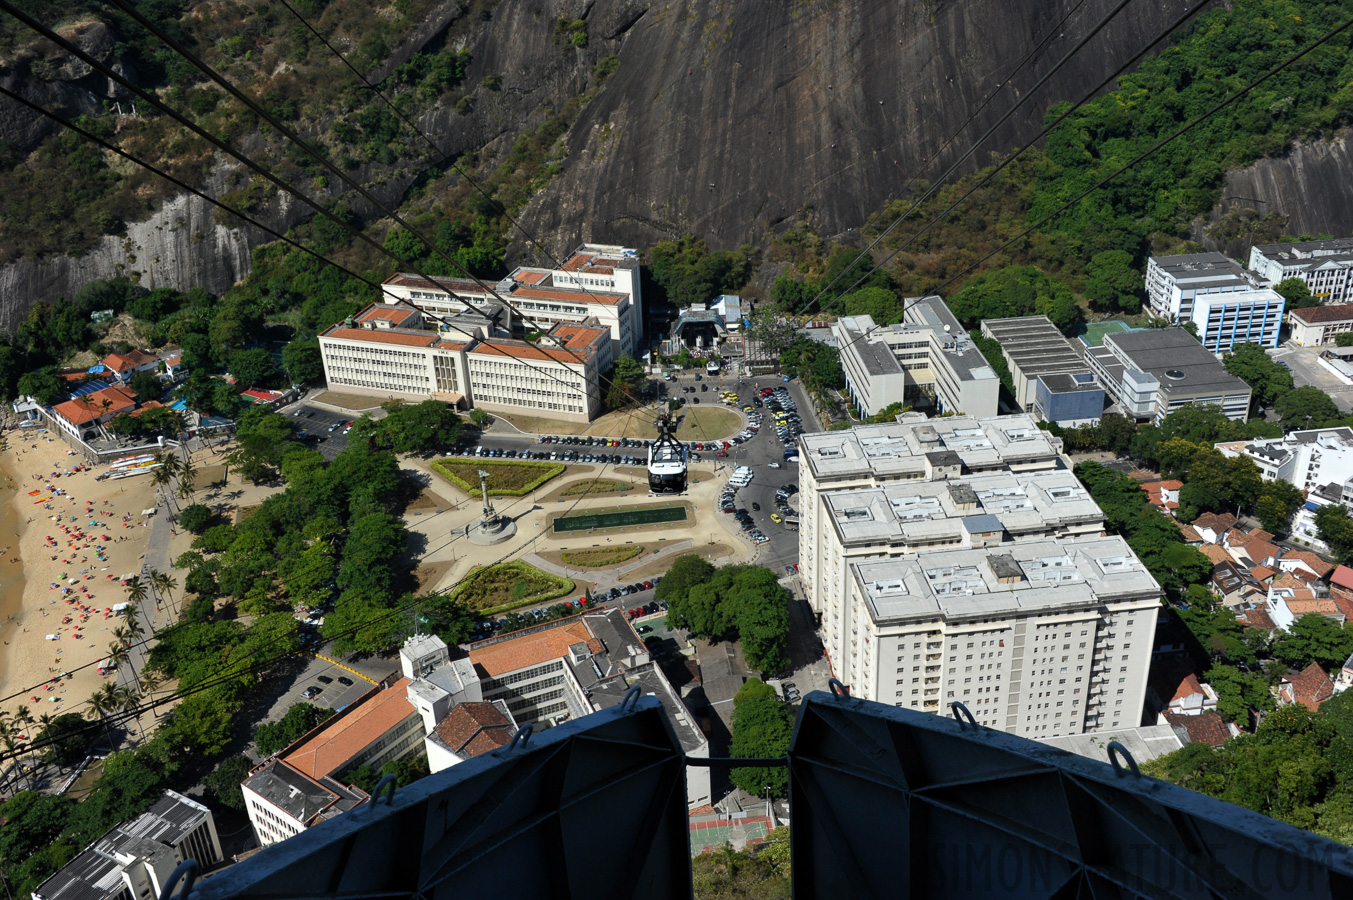 Rio de Janeiro [35 mm, 1/1600 sec at f / 9.0, ISO 800]